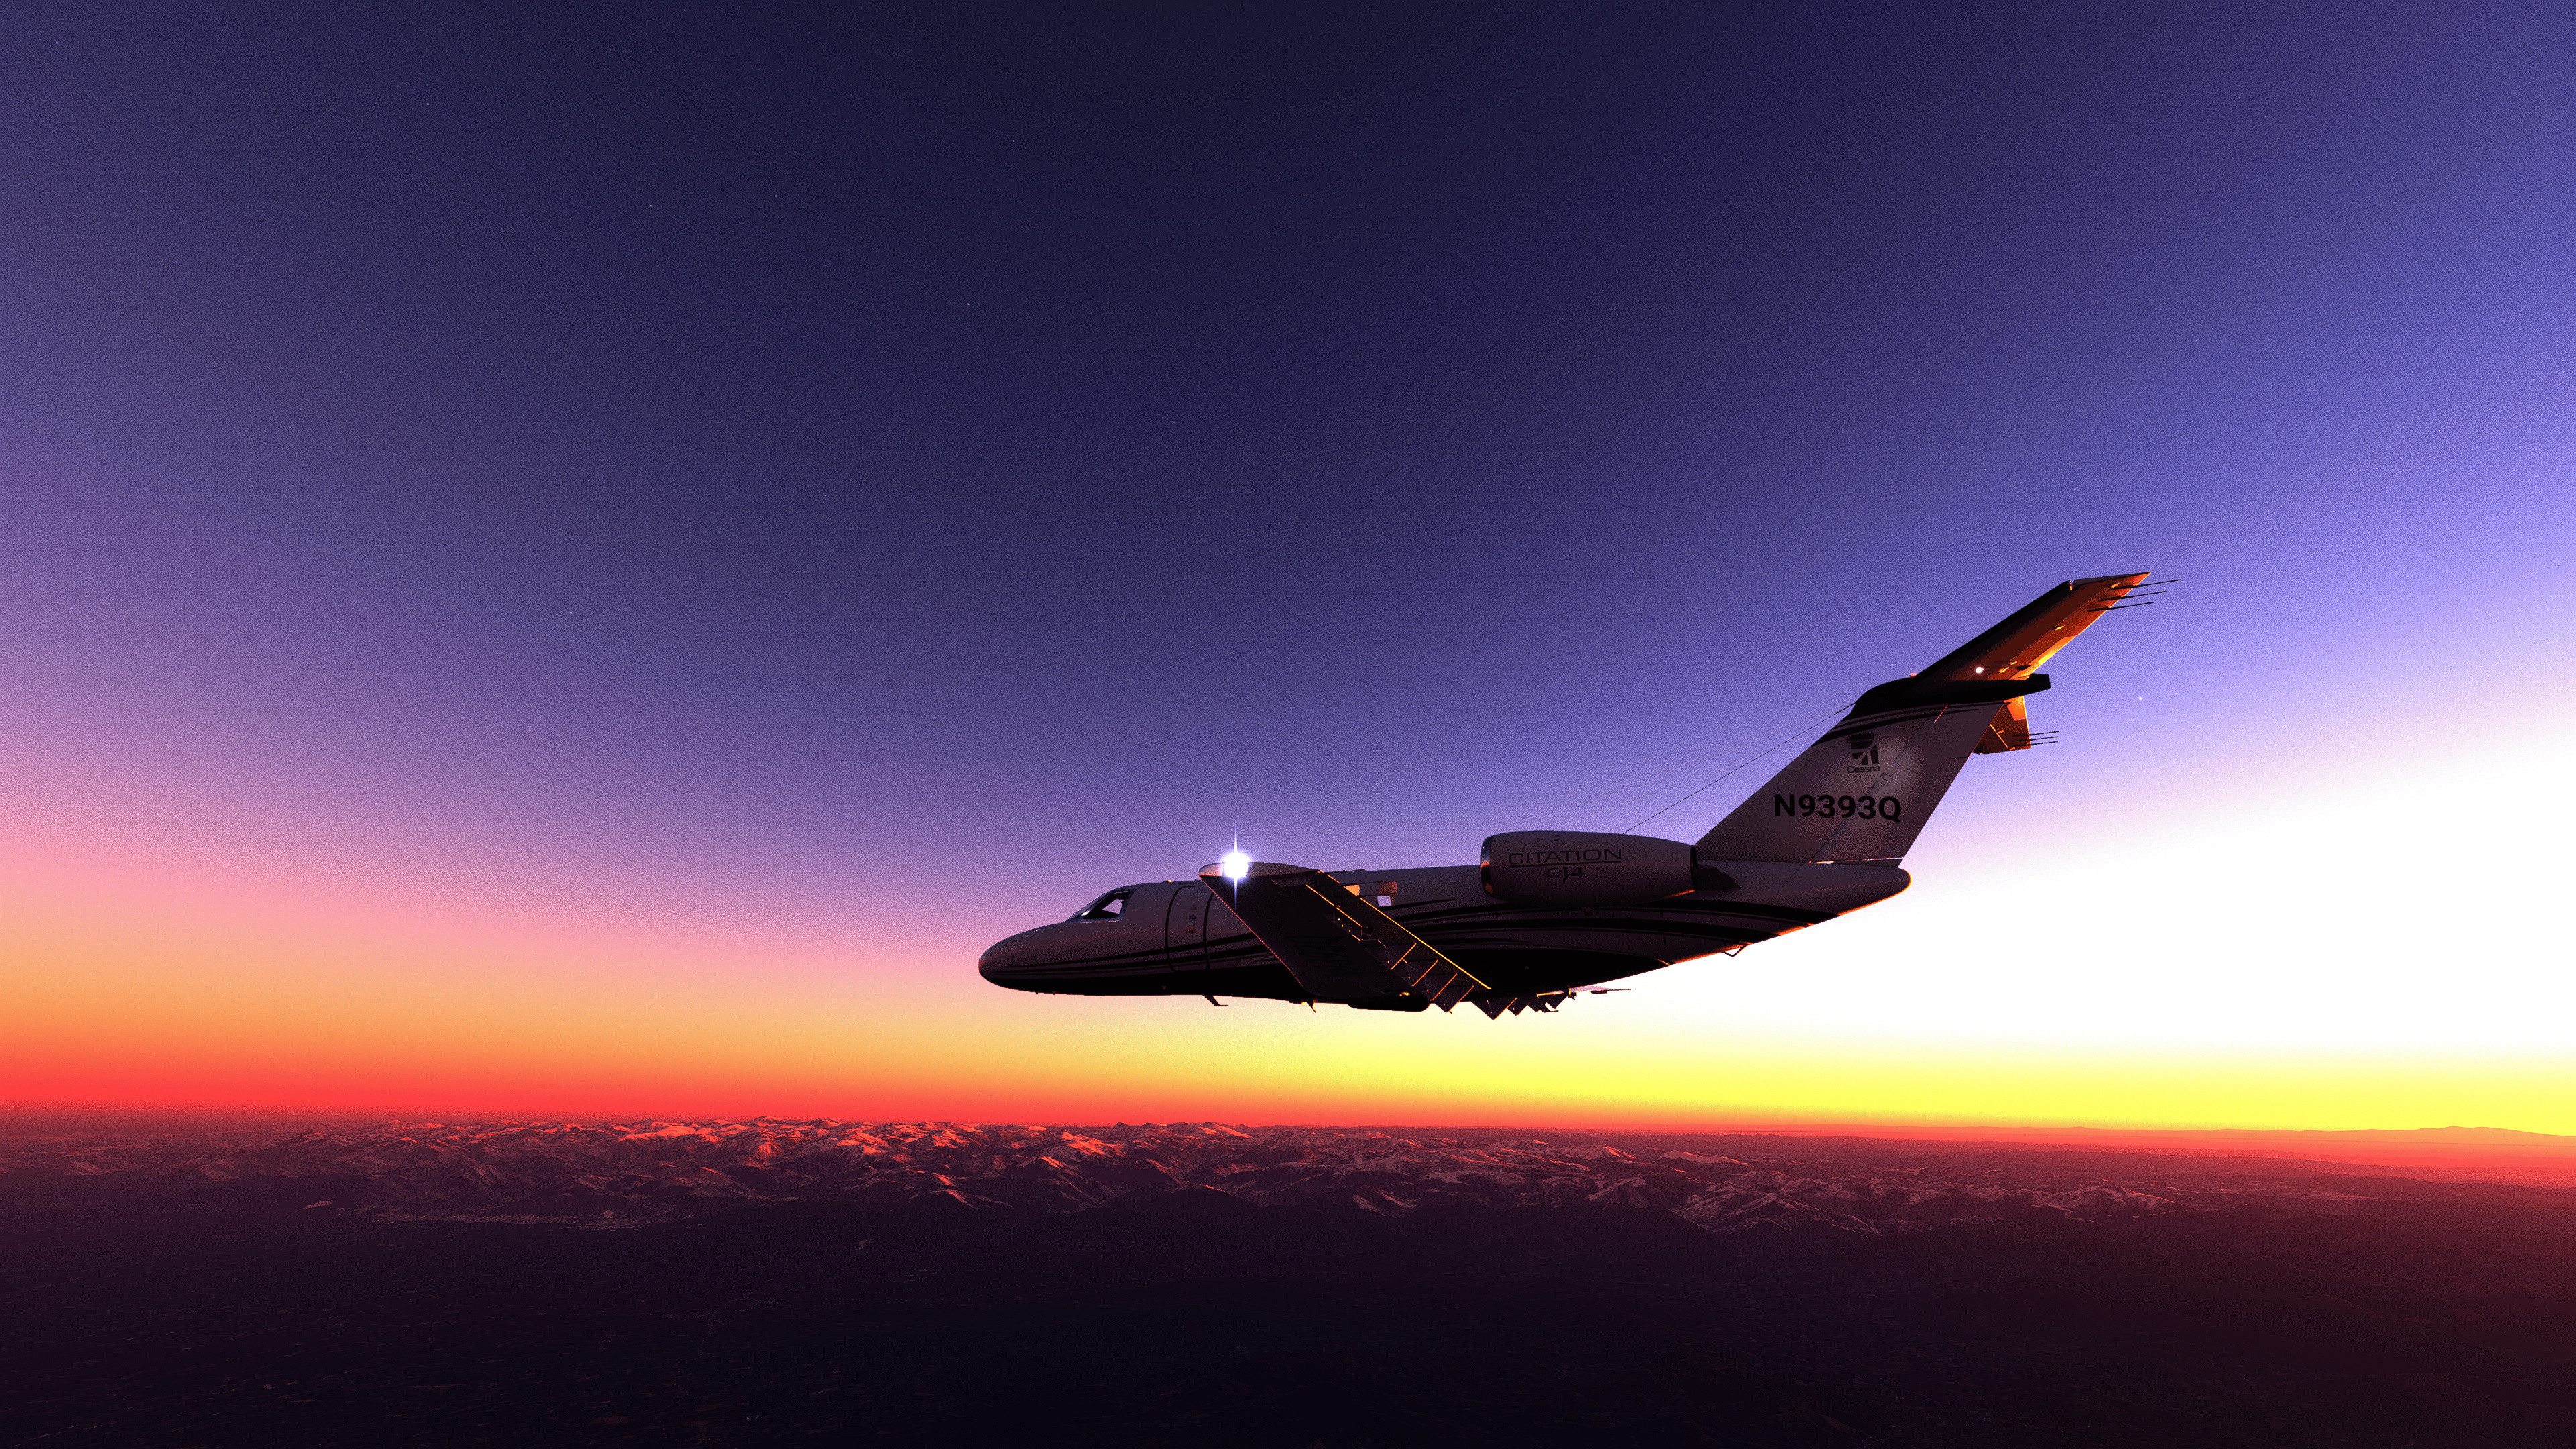 Sunset, Cessna Citation Wallpaper, 3840x2160 4K Desktop